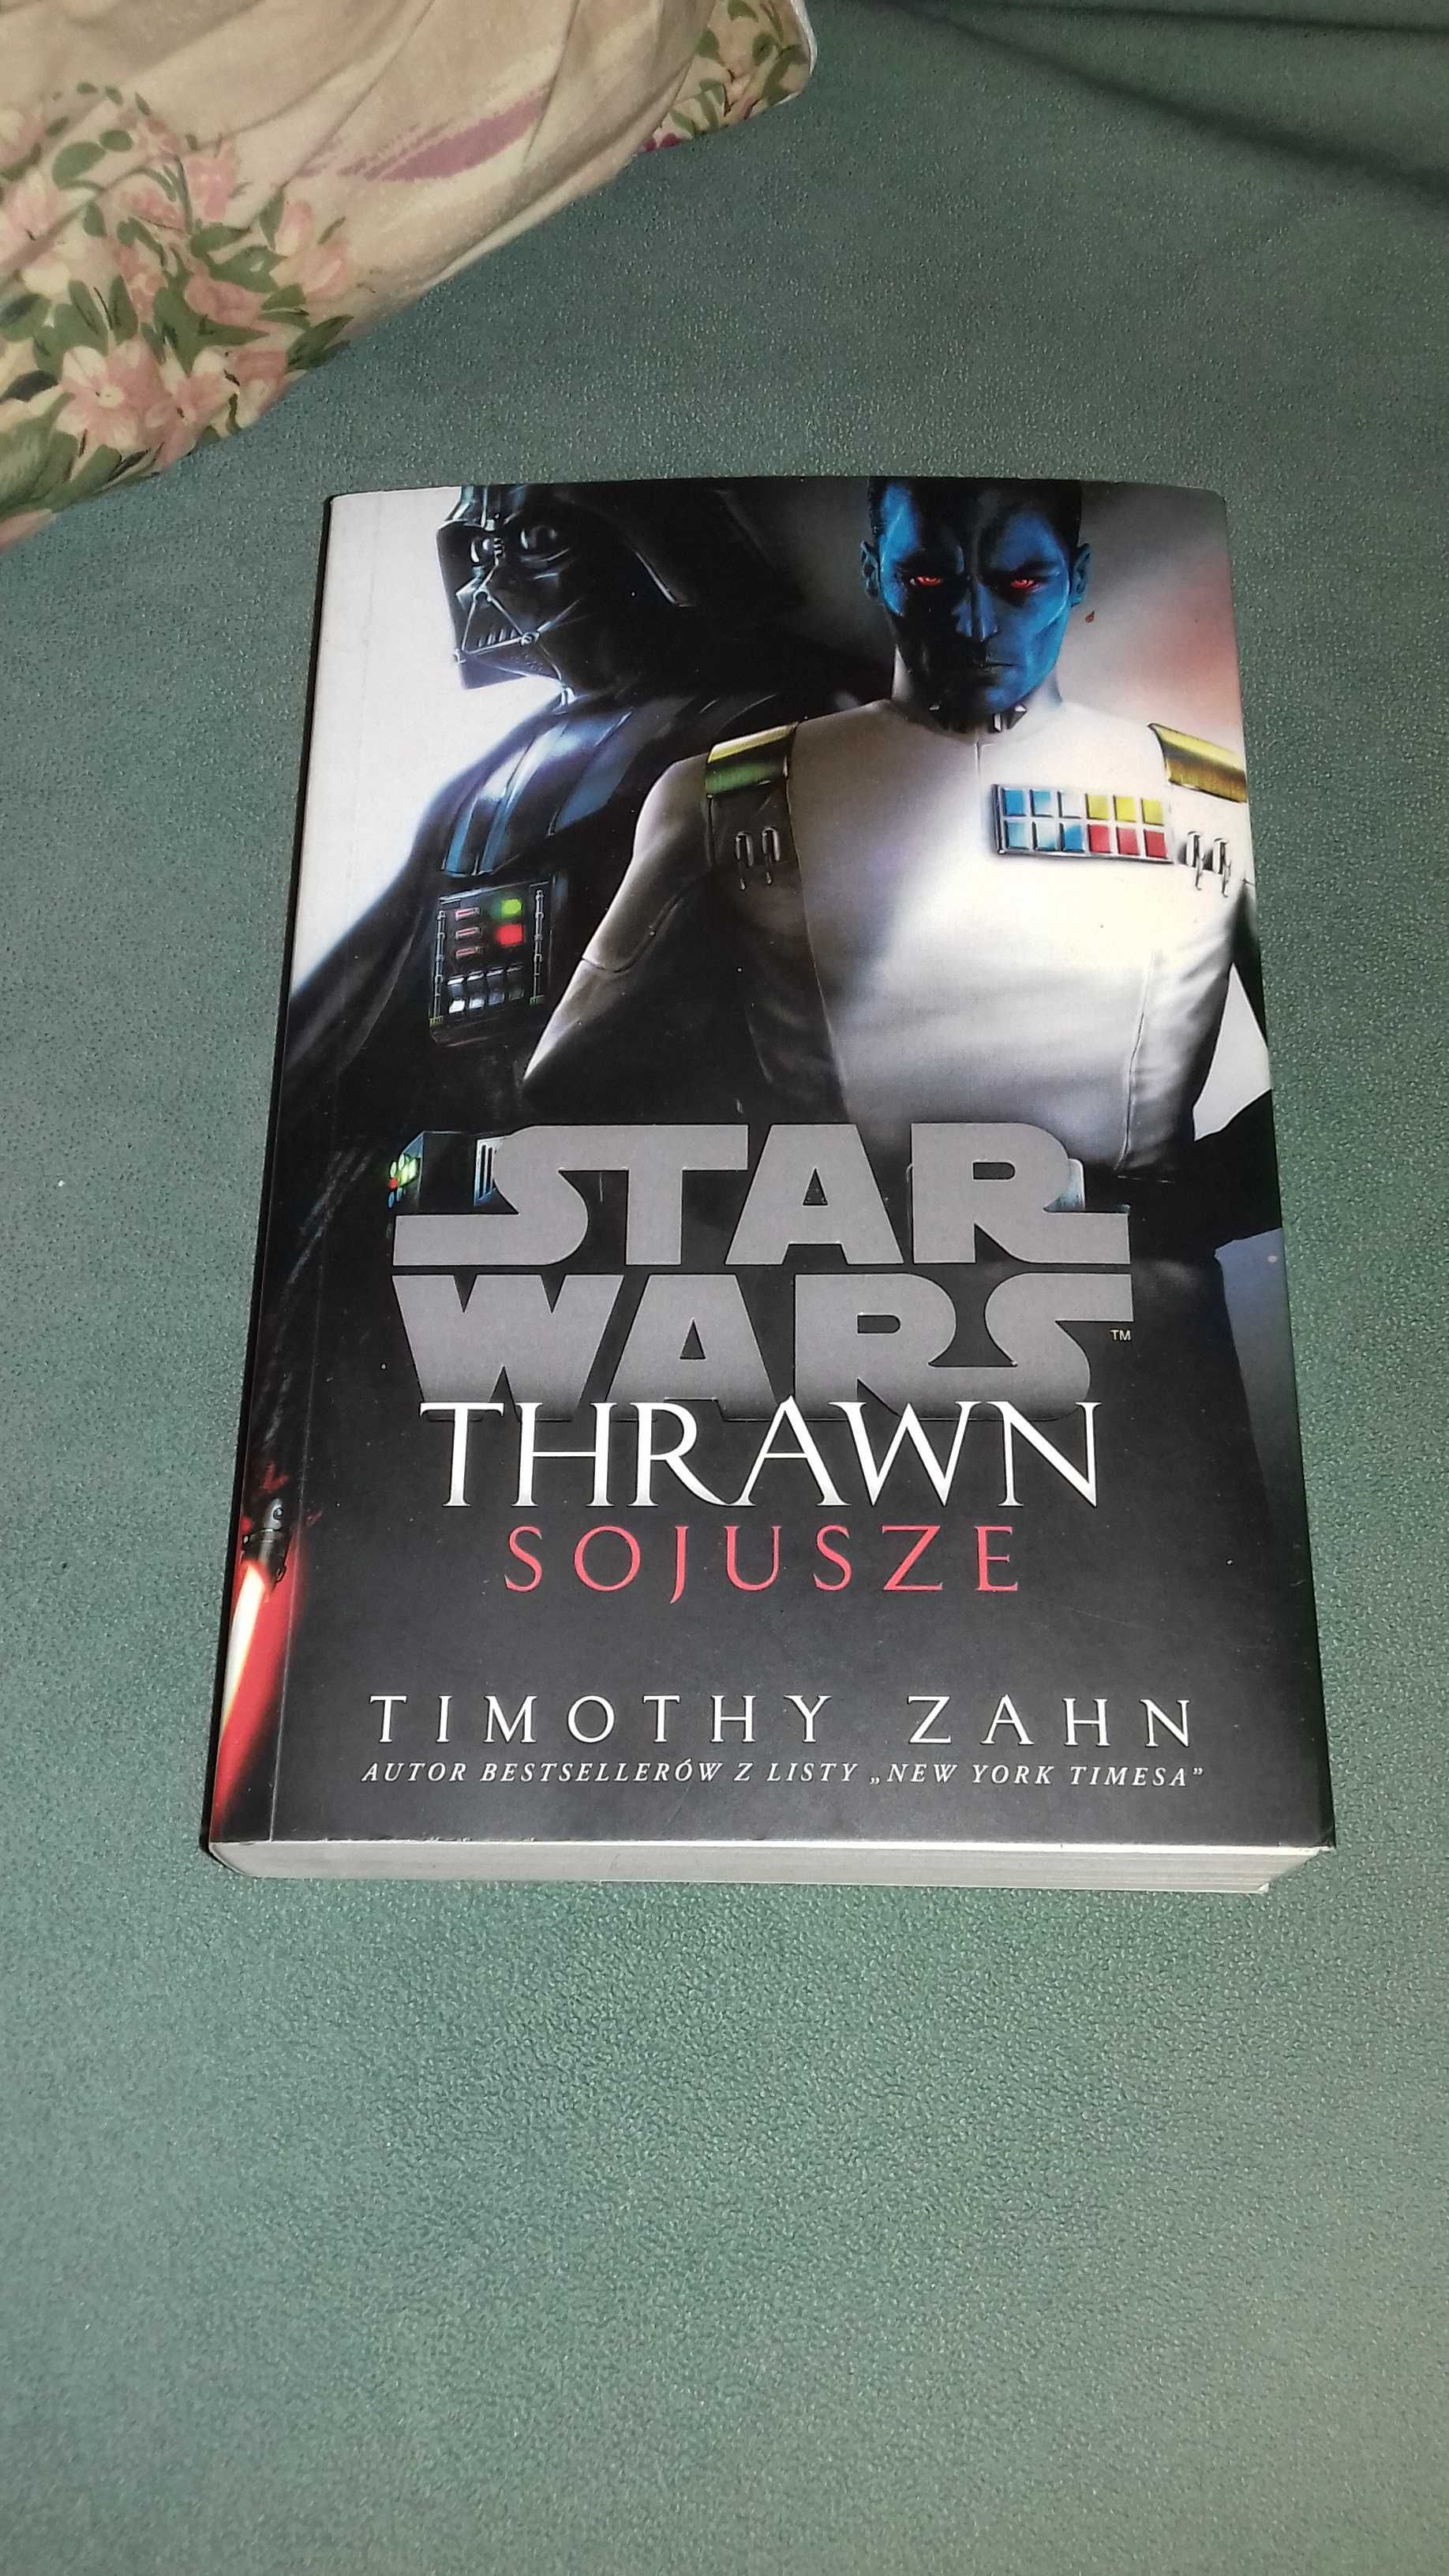 Star Wars Thrawn Sojusze Timothy Zahn